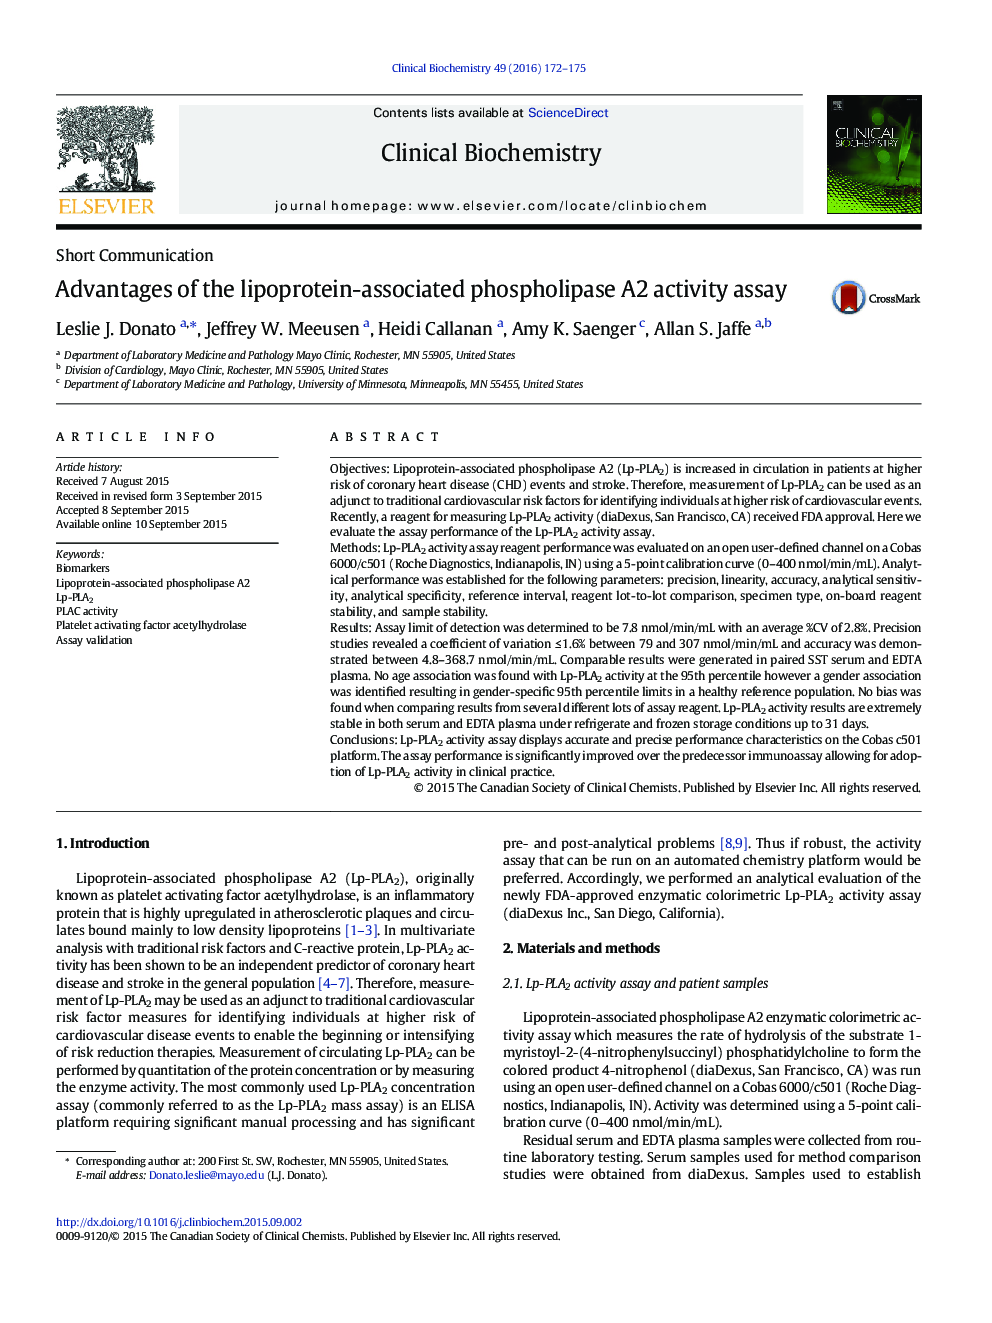 مزایای استفاده از روش فعالیت فسفولیپاز A2 مرتبط با لیپوپروتئین 